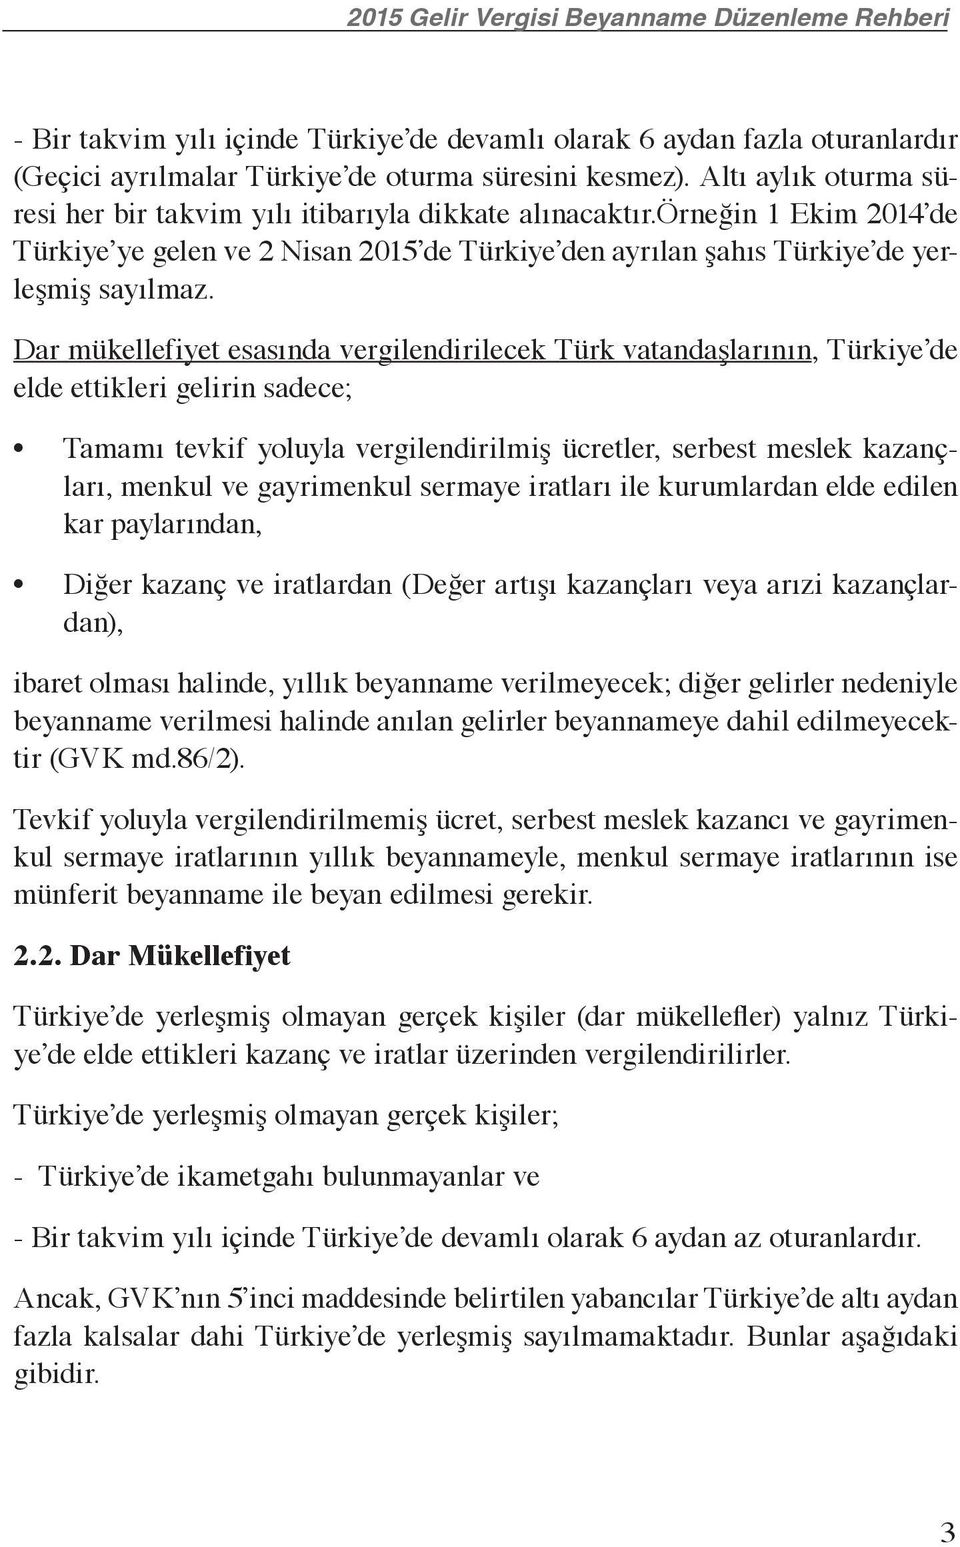 Dar mükellefiyet esasında vergilendirilecek Türk vatandaşlarının, Türkiye de elde ettikleri gelirin sadece; Tamamı tevkif yoluyla vergilendirilmiş ücretler, serbest meslek kazançları, menkul ve